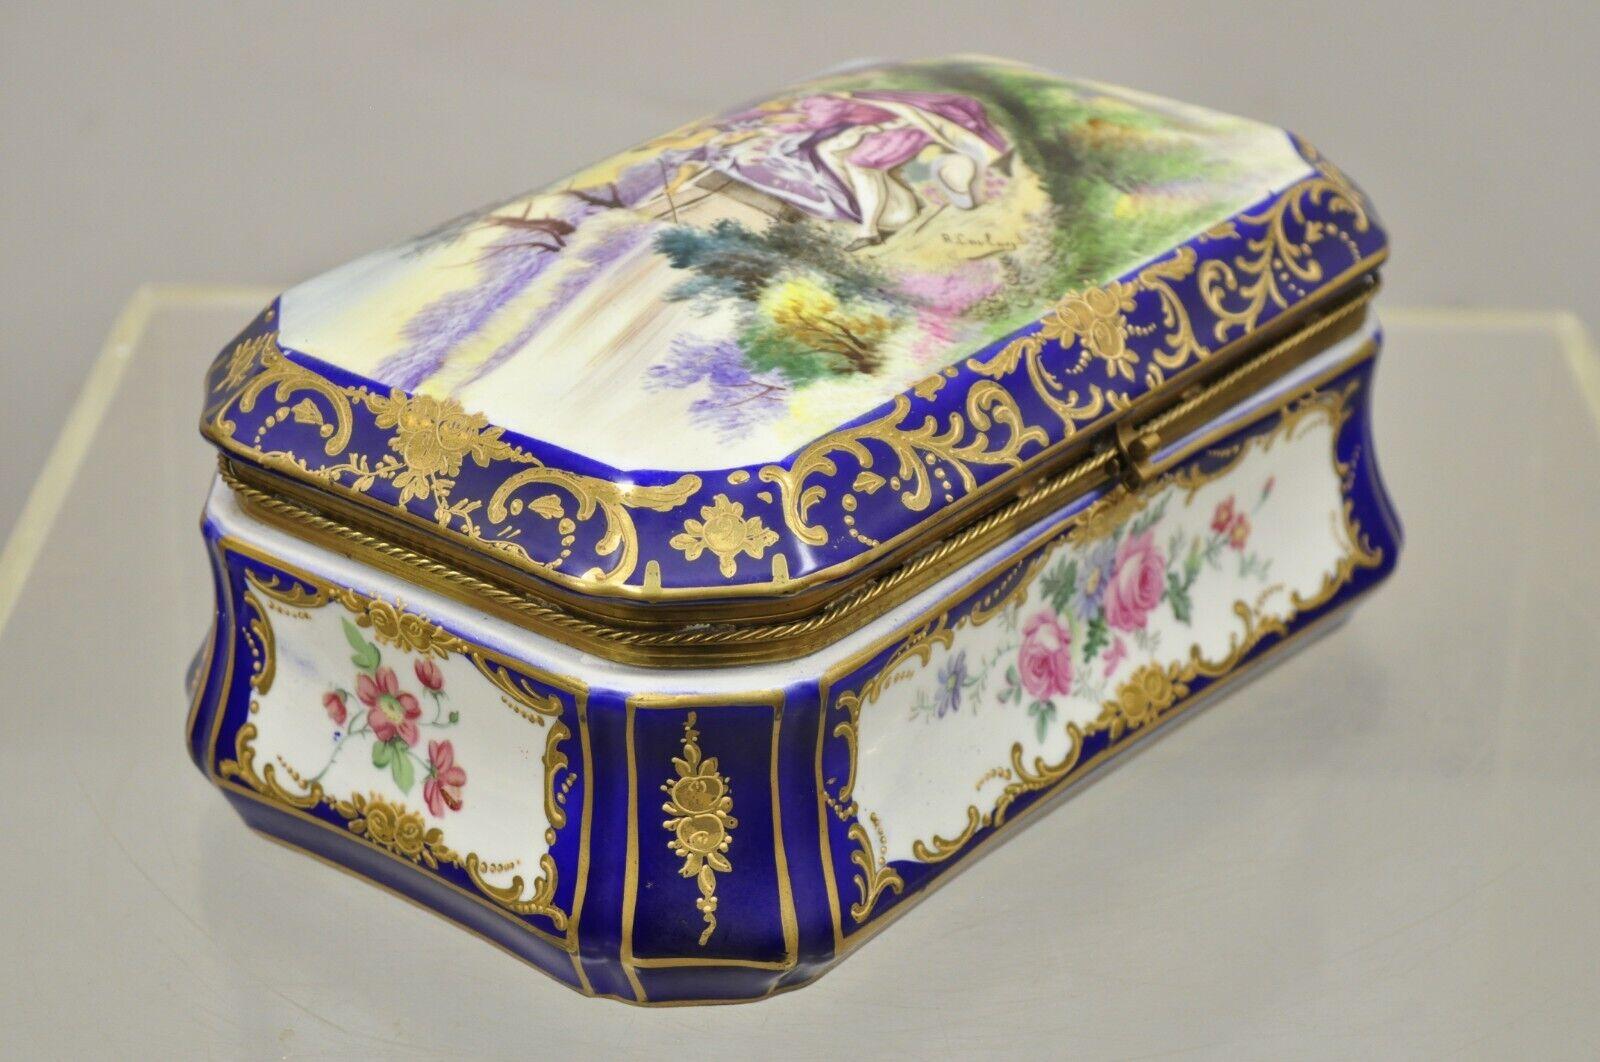 Vieille boîte à charnière en porcelaine bleue française victorienne peinte à la main, signée R. Coulory. L'article présente des détails floraux peints à la main, un intérieur peint à la main, une scène de cour sur le couvercle, signé 